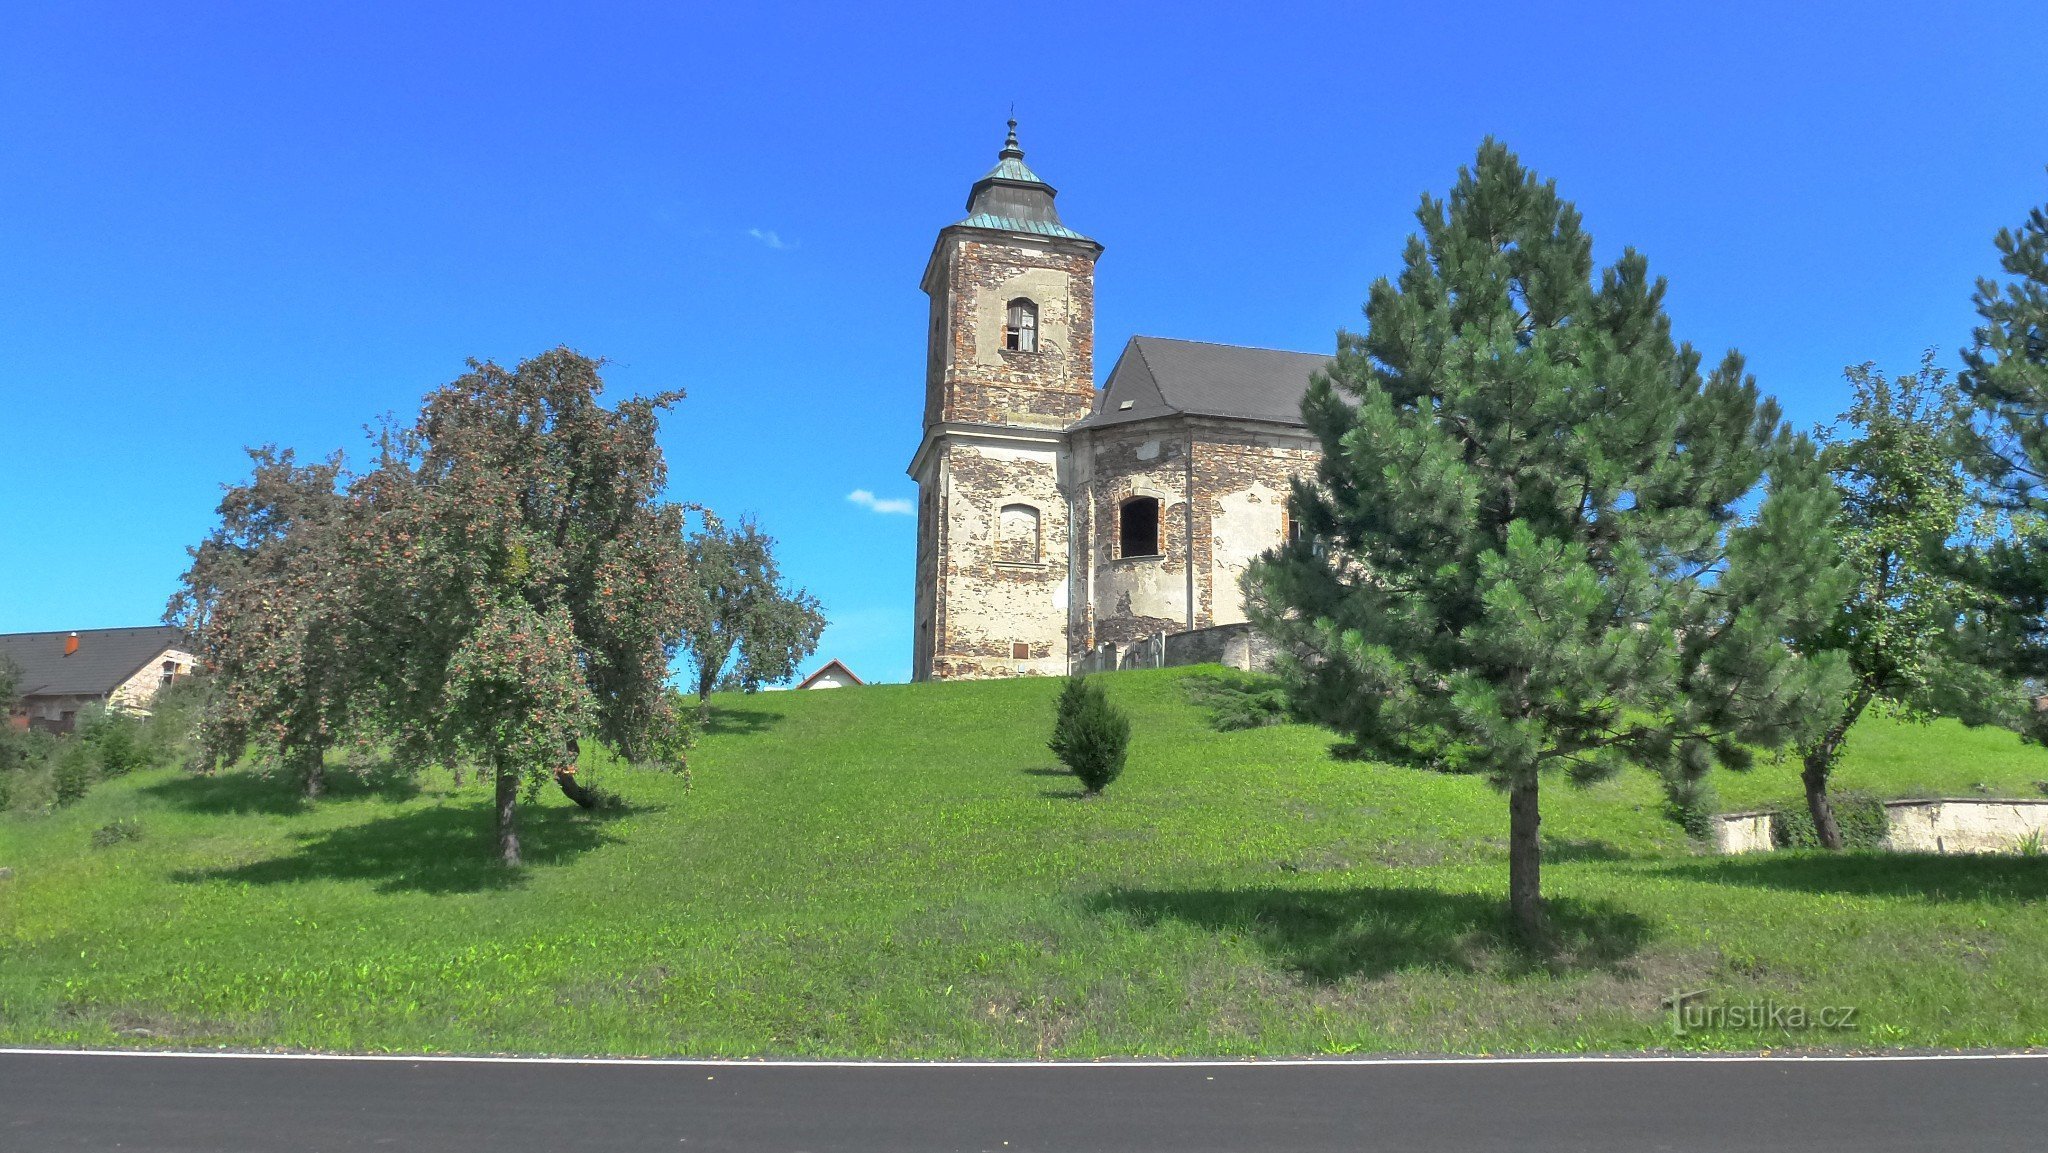 Caratteristica dominante del paese è la chiesa del 1738, quella originaria in legno è citata già nel 1352